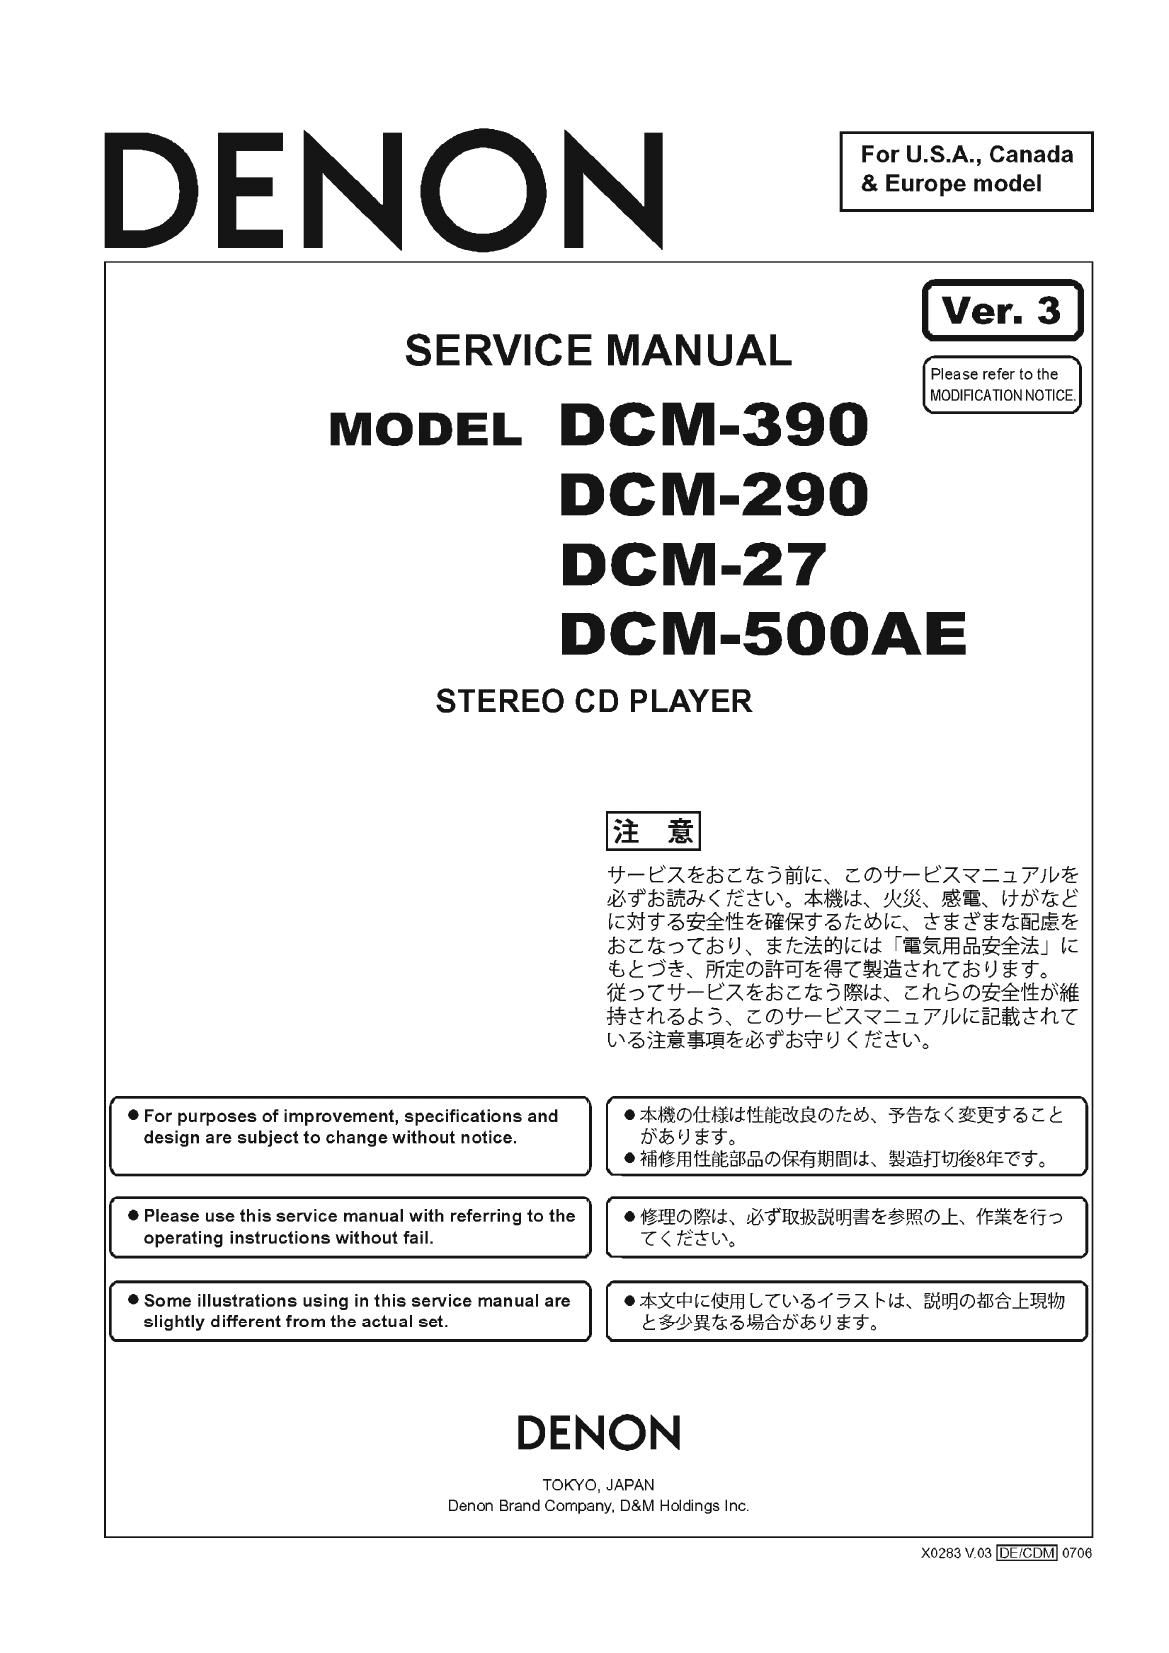 Denon DCM 390 Service Manual